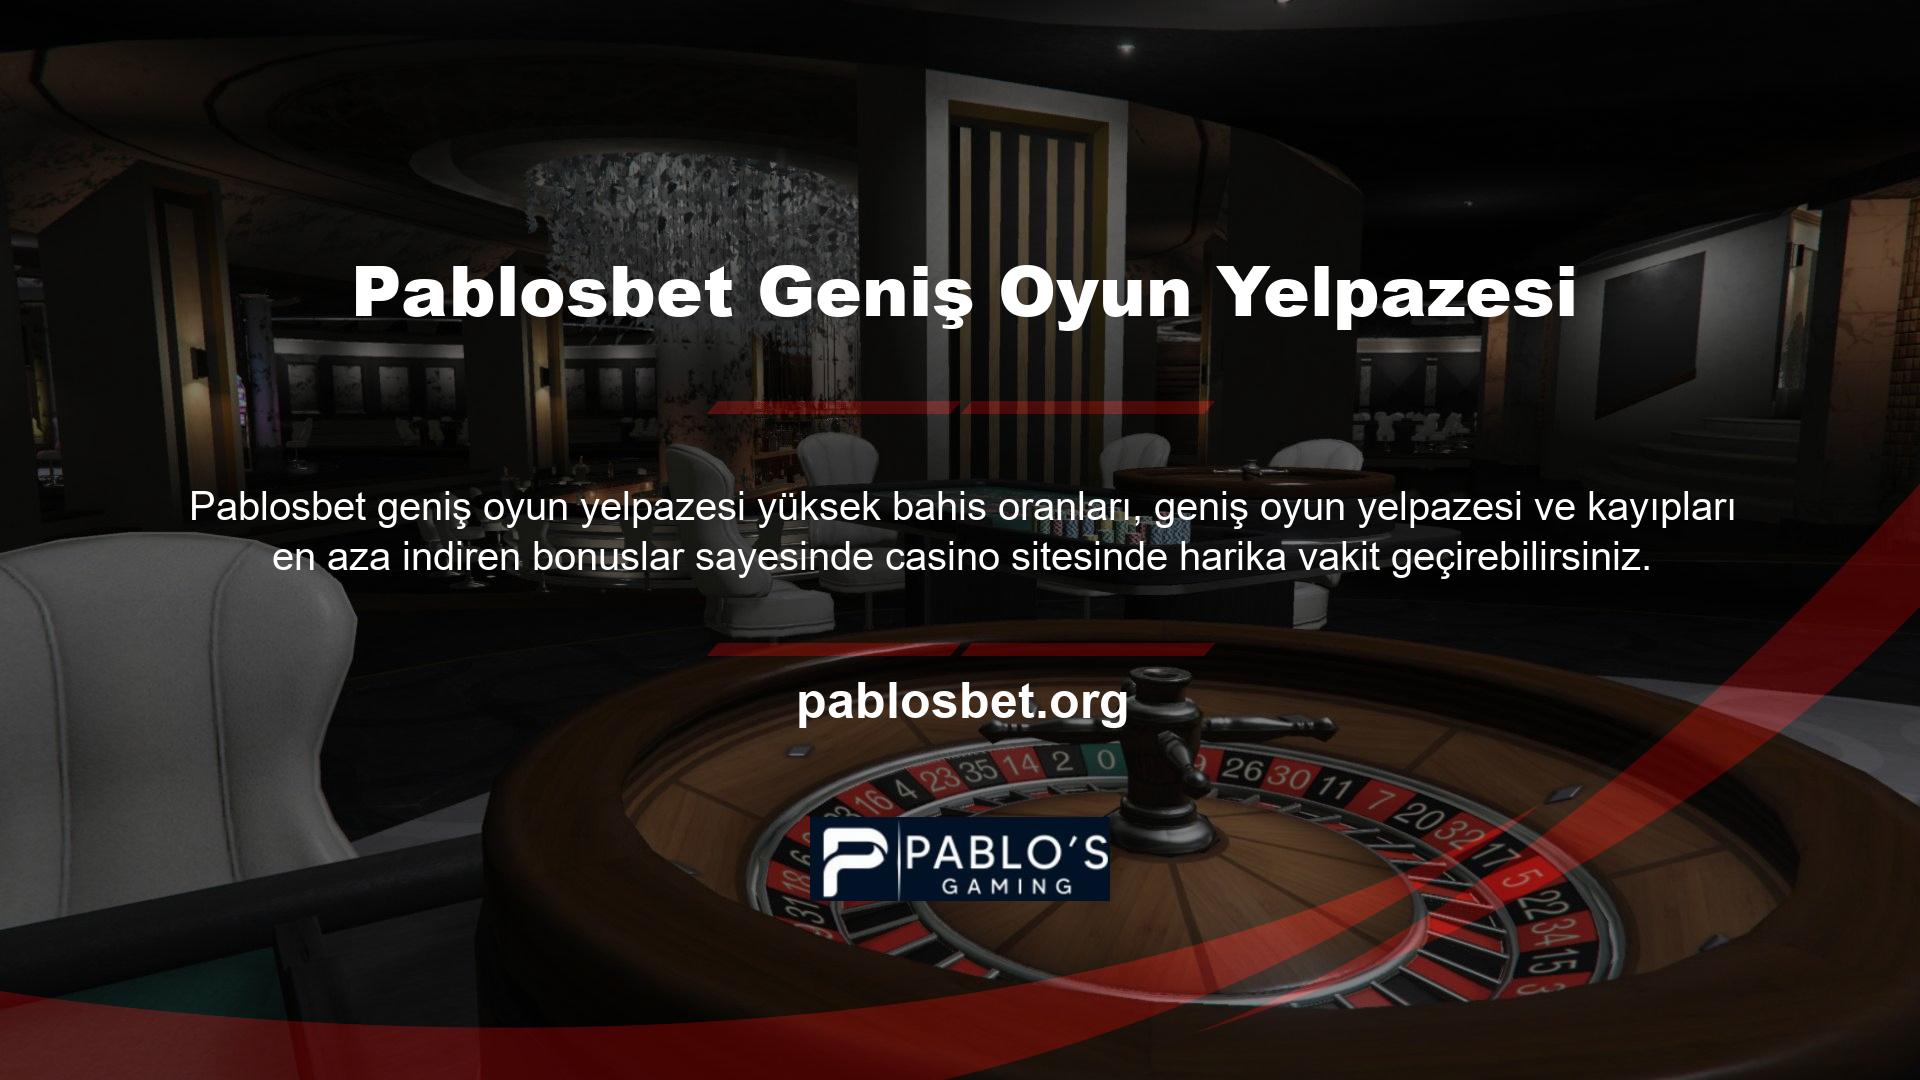 Bugünden itibaren Pablosbet Gaming ve Casino web sitesinin kesintisiz giriş adresi Pablosbet